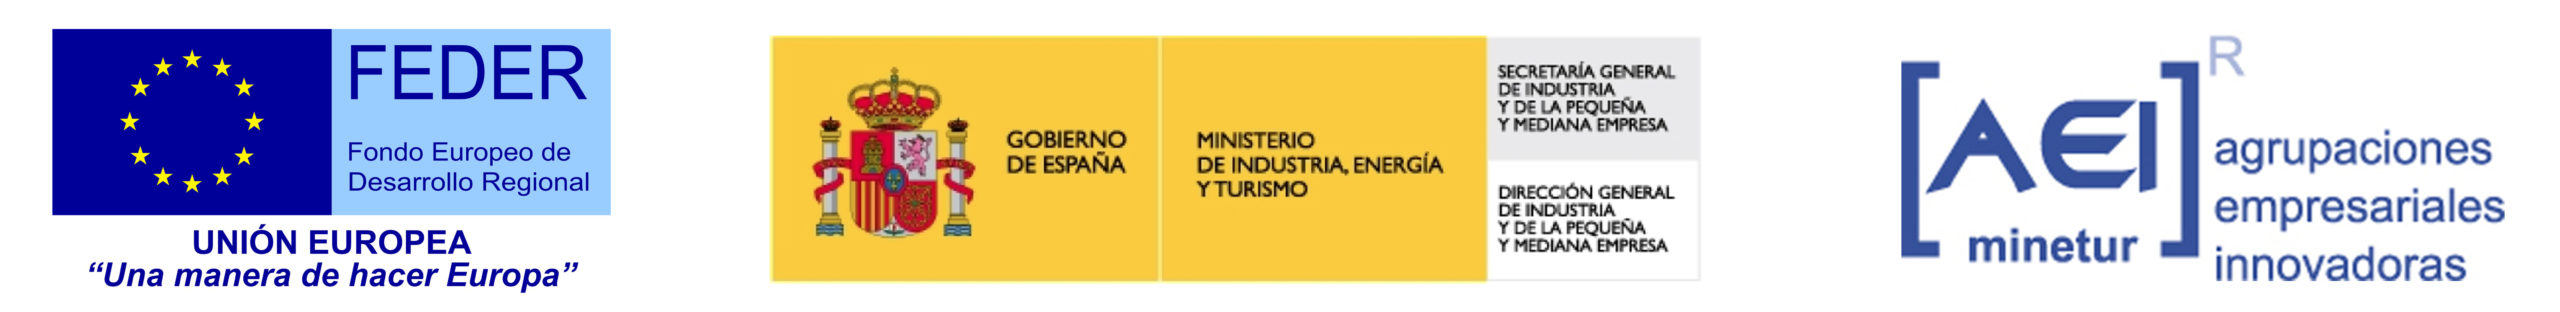 Proyecto cofinanciado por el Ministerio de Industria, Energía y Turismo y el Fondo Europeo de Desarrollo Regional, dentro del Programa de apoyo a las AEI, para contribuir a la mejora de la competitividad de la industria española.